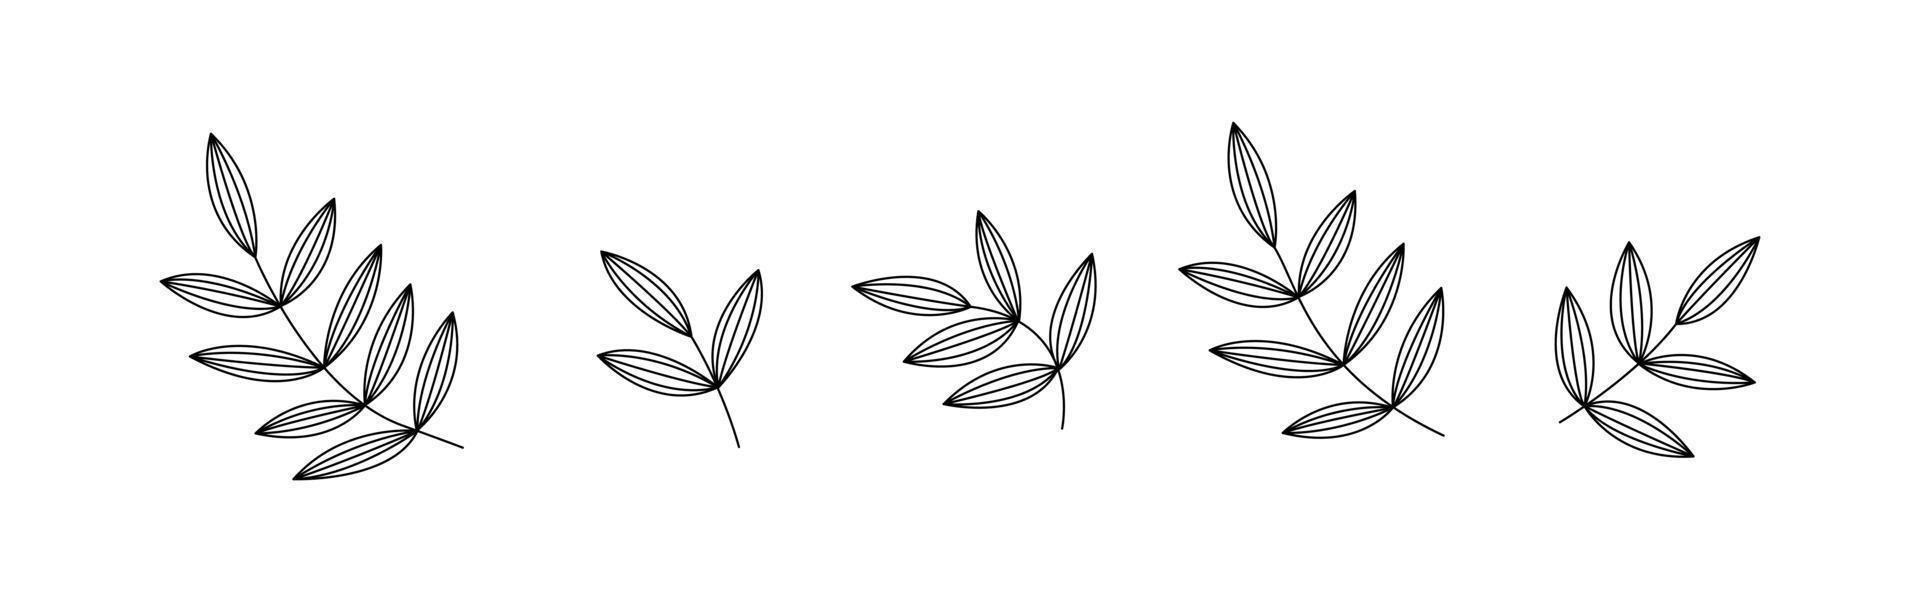 Botanischer Blumenpinsel mit Blatt. Hand zeichnen Grenze. abstrakt verlassen Hintergrundmuster. botanisches texturdesign für druck, wandkunst und tapete. Vektor-Illustration vektor